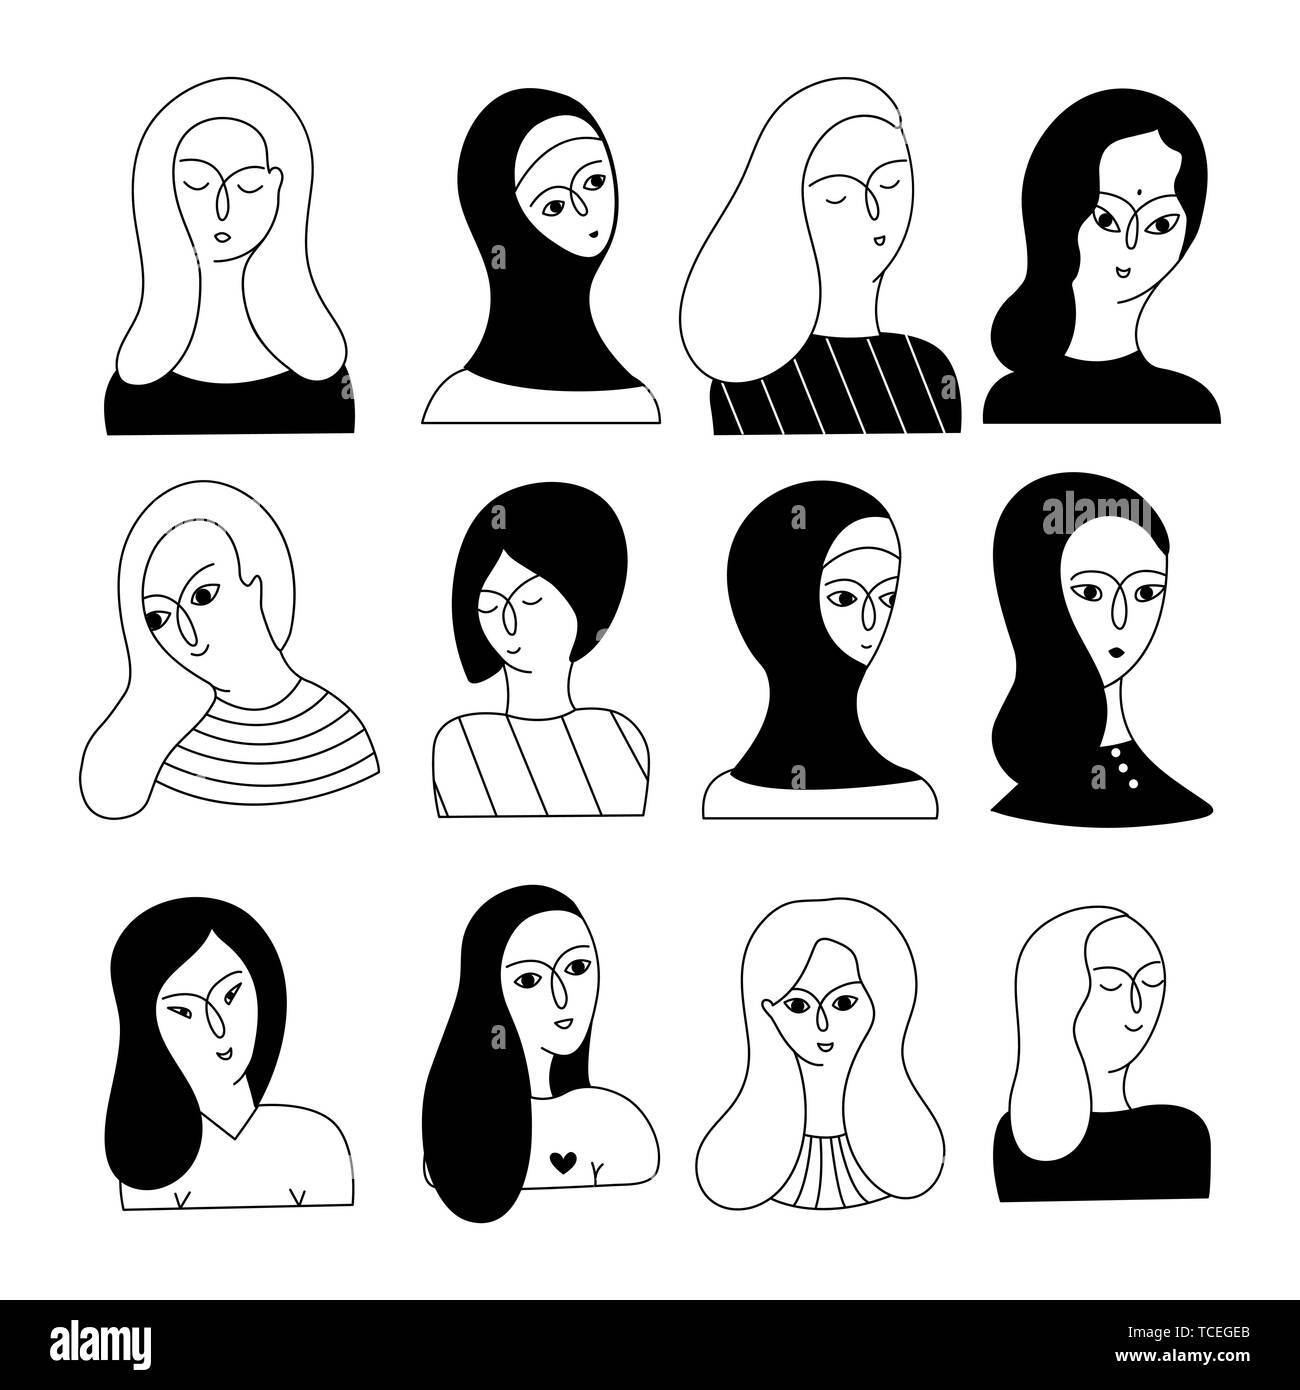 Eine multikulturelle Gruppe von Frauen die Faeces (Muslim, Asiatischen, Europäischen, Hindu) auf einem weißen Hintergrund. Soziale Vielfalt. Doodle cartoon Vector Illustration. Stock Vektor